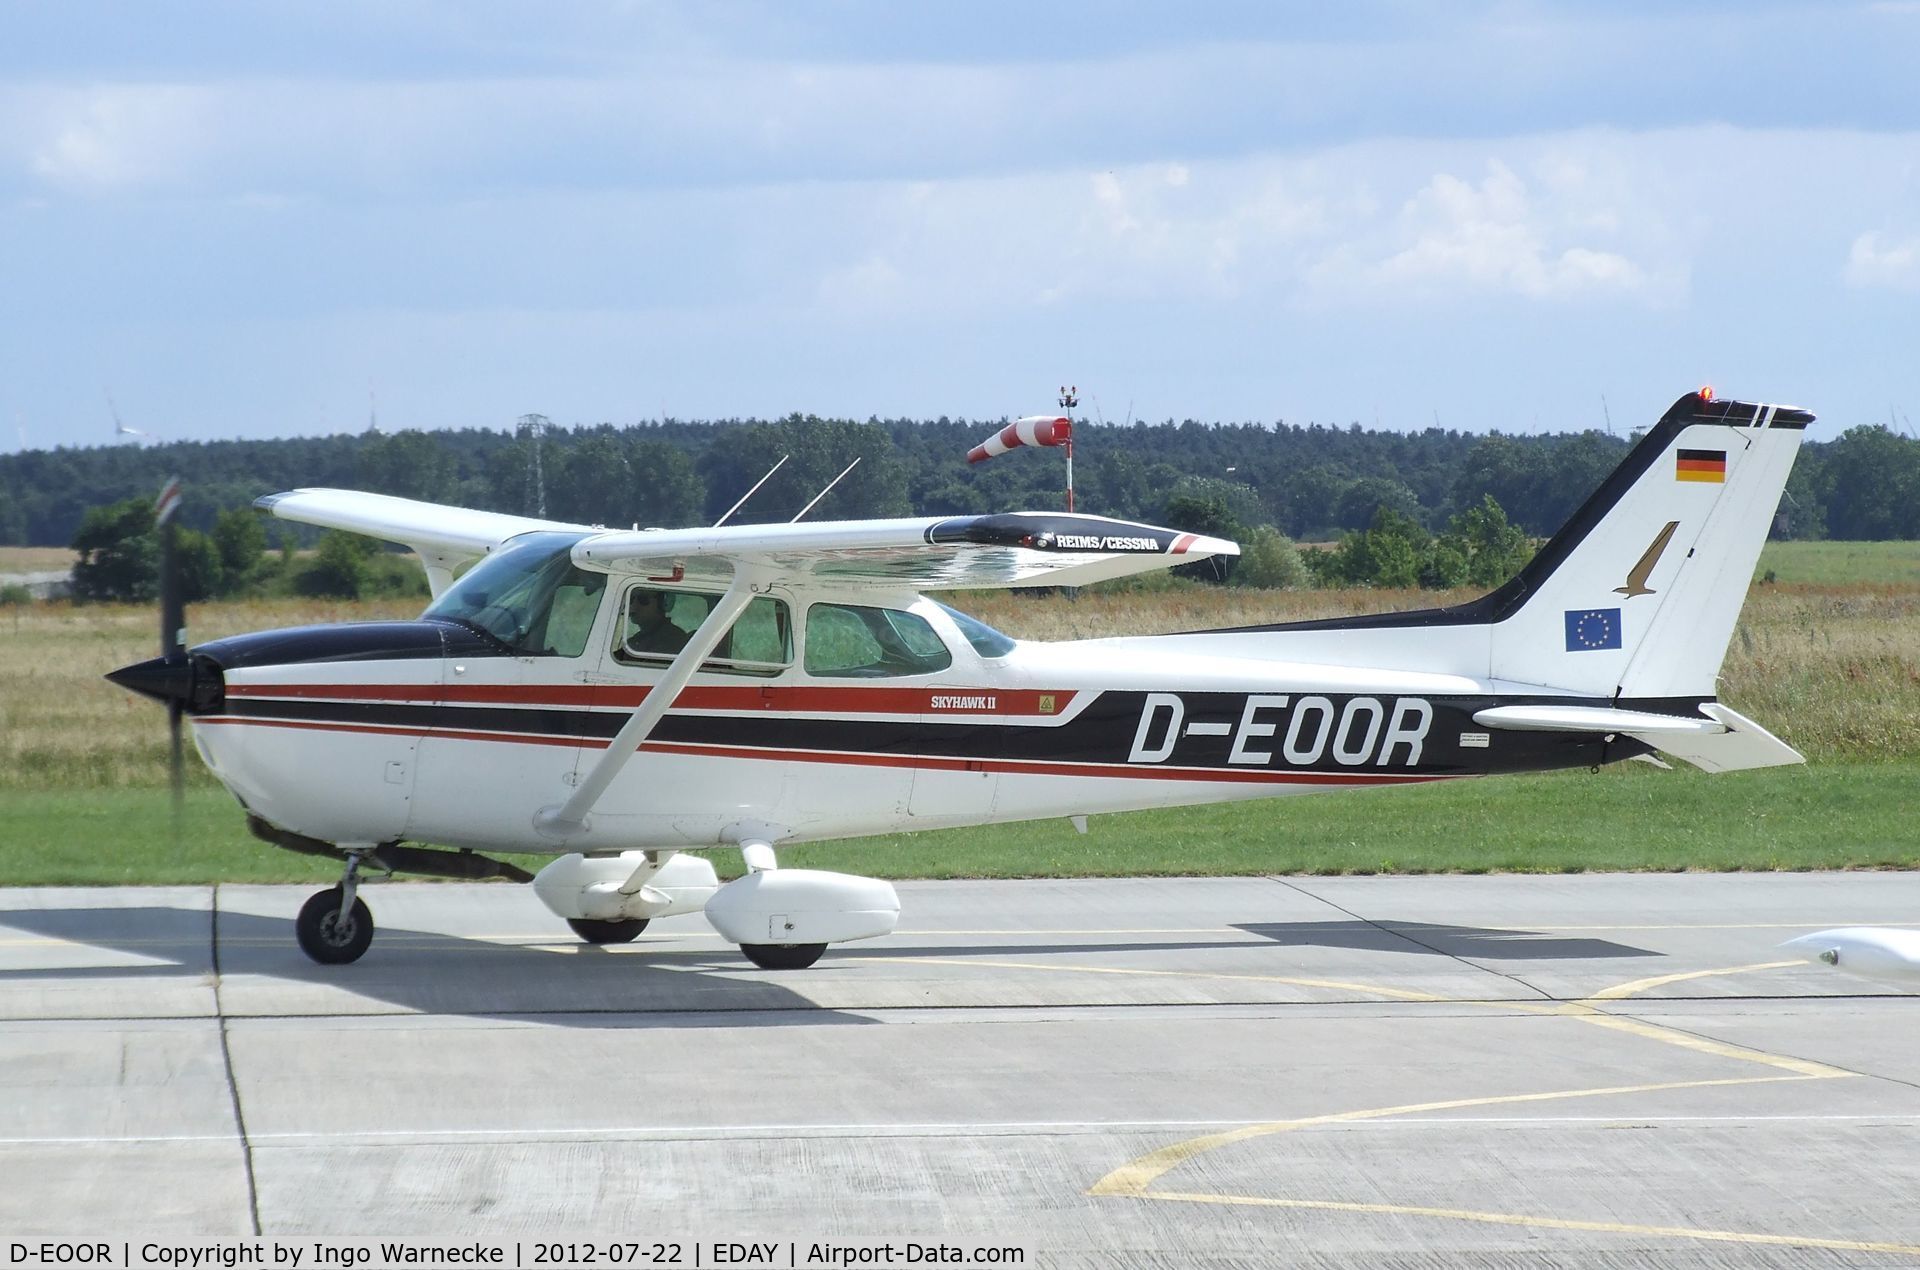 D-EOOR, Reims F172N II Skyhawk C/N 1973, Cessna (Reims) F172N Skyhawk II at Strausberg airfield